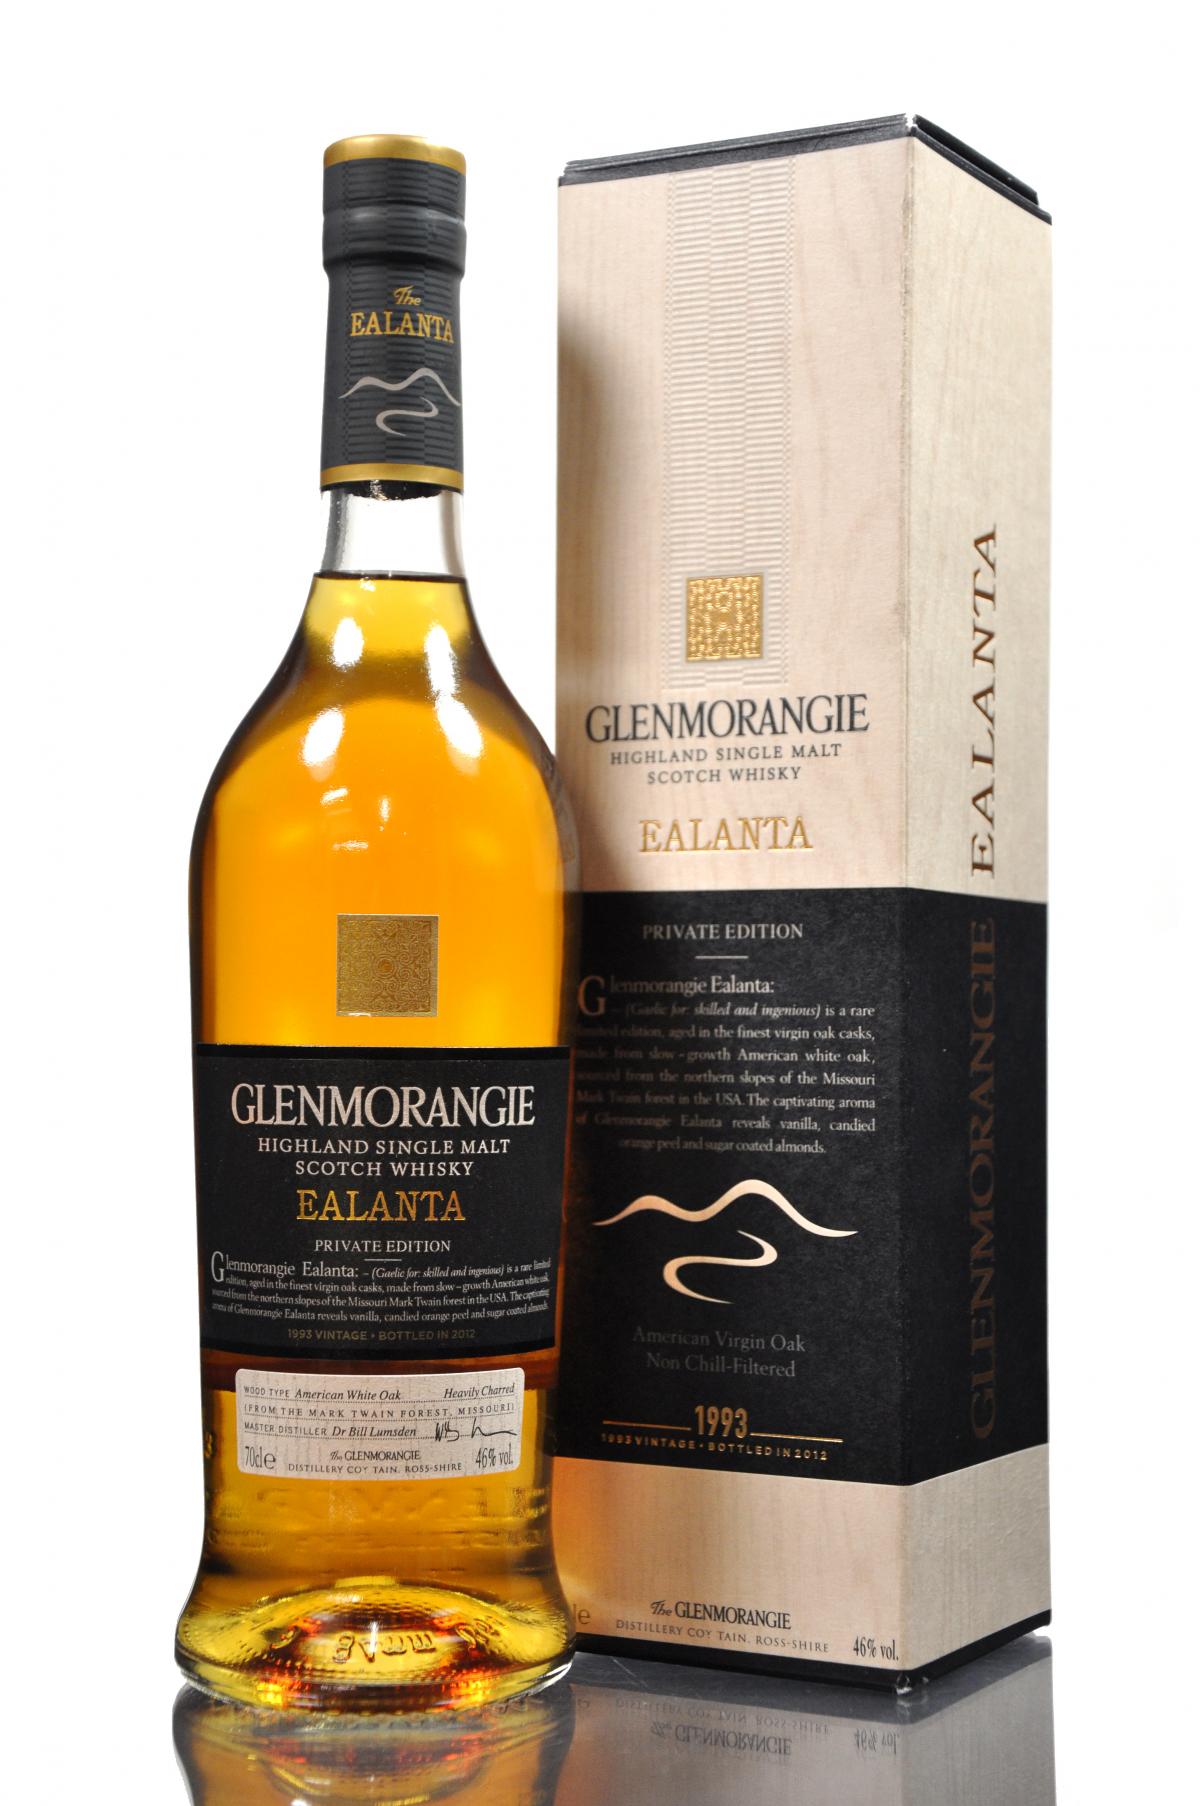 Glenmorangie 1993-2012 - Ealanta Private Edition - 4th release